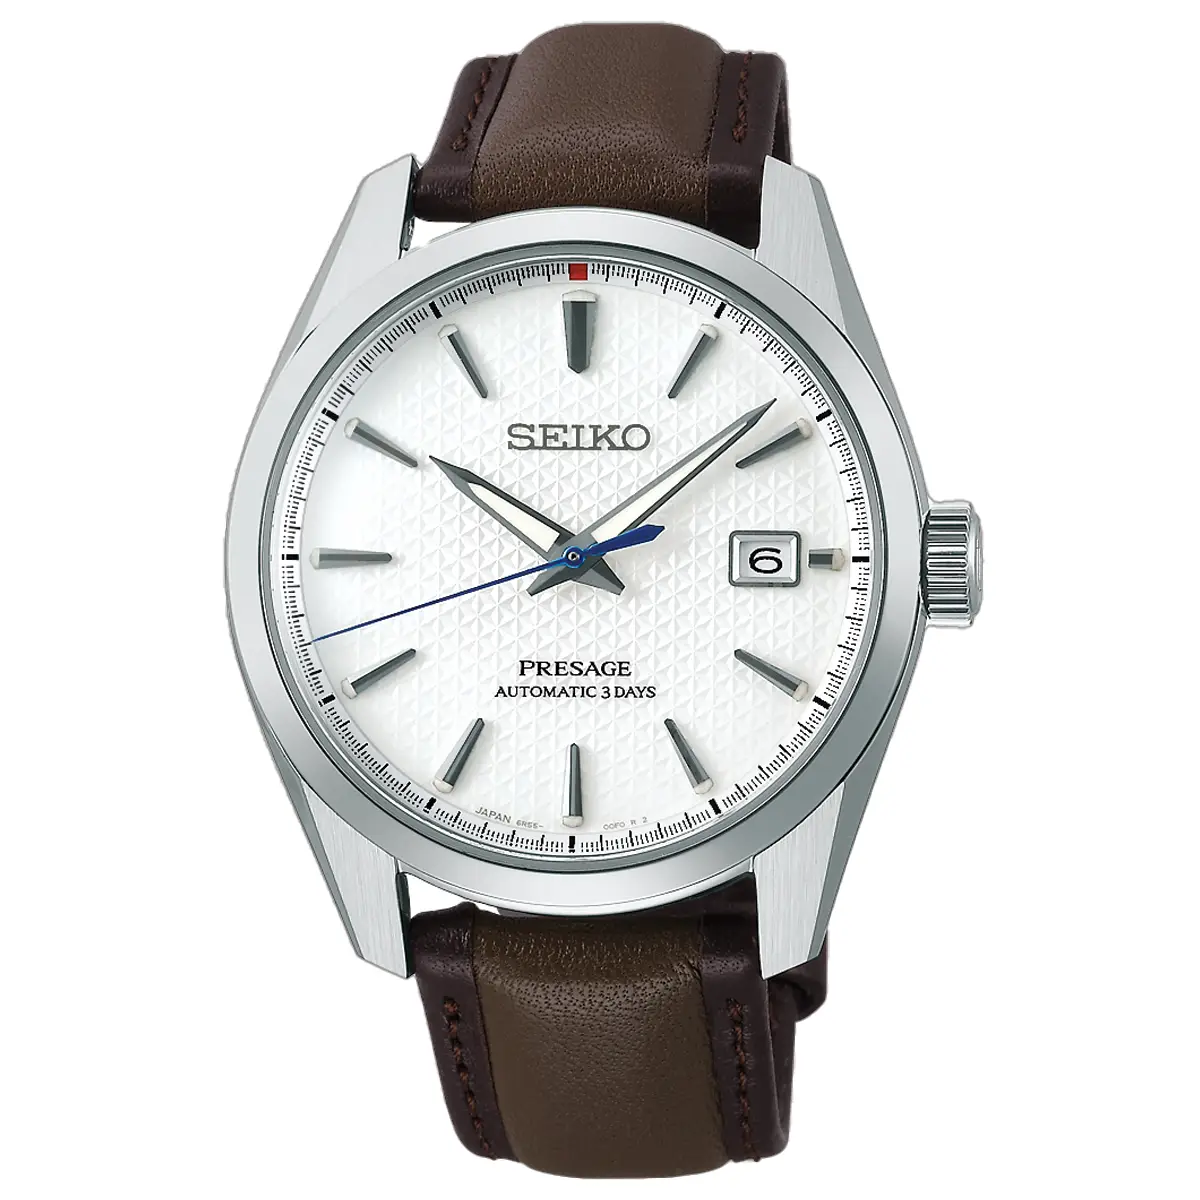 Đồng hồ Seiko Presage Sharp Edged Laurel Limited 110th Wristwatchmaking Anniversary SPB413J1 mặt số màu trắng. Dây đeo bằng da. Thân vỏ bằng thép